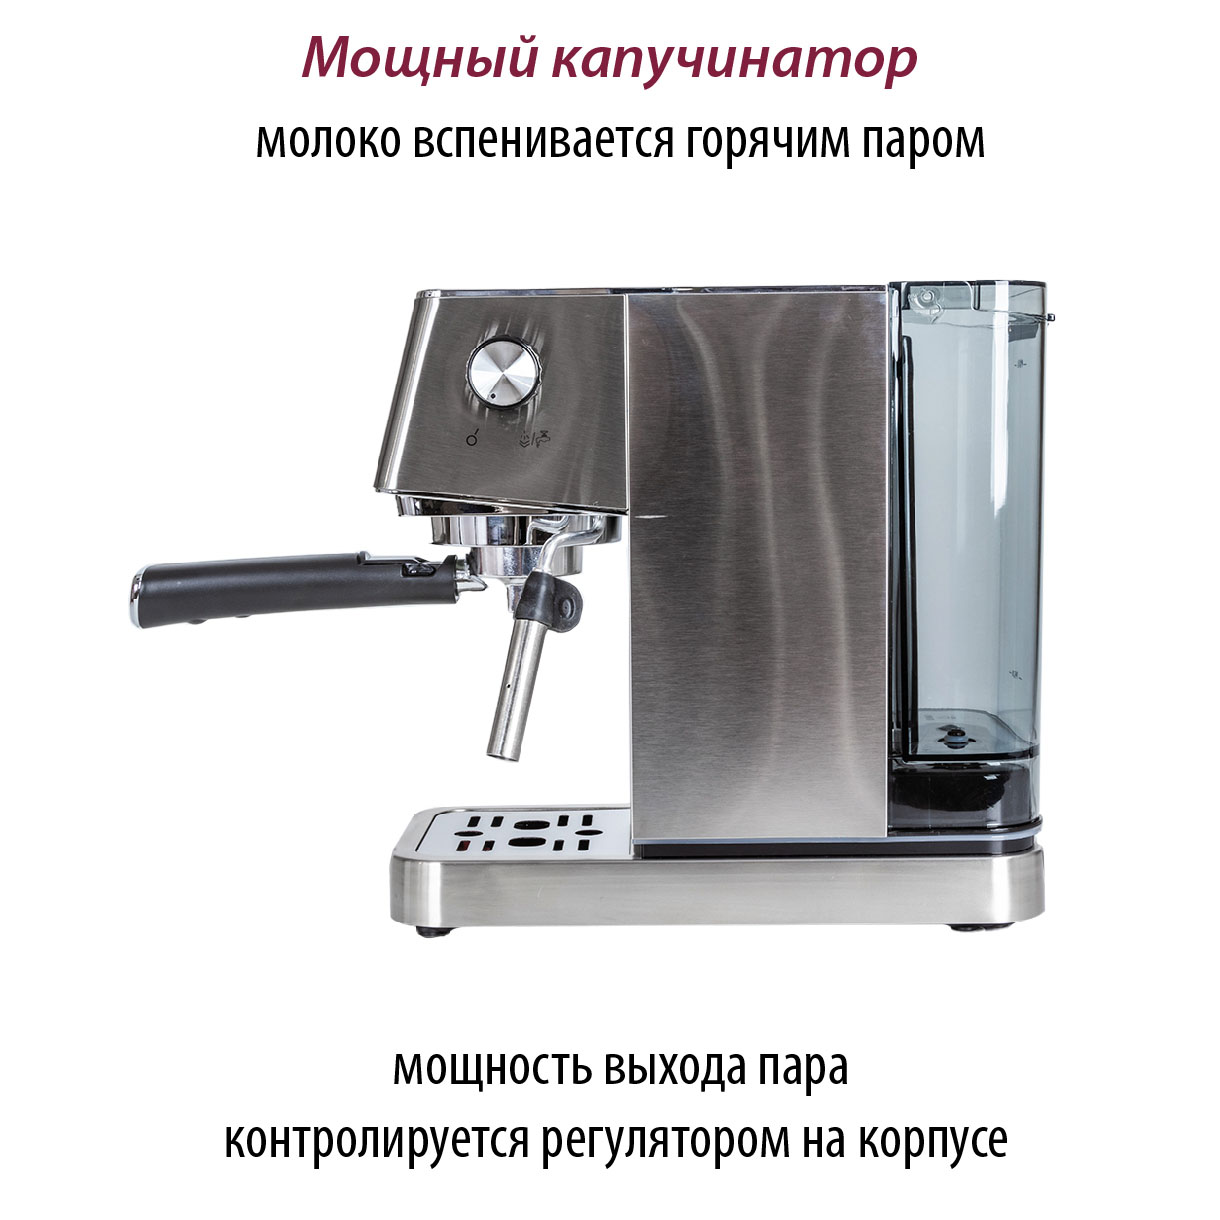 Рожковая кофеварка Pioneer CM110P